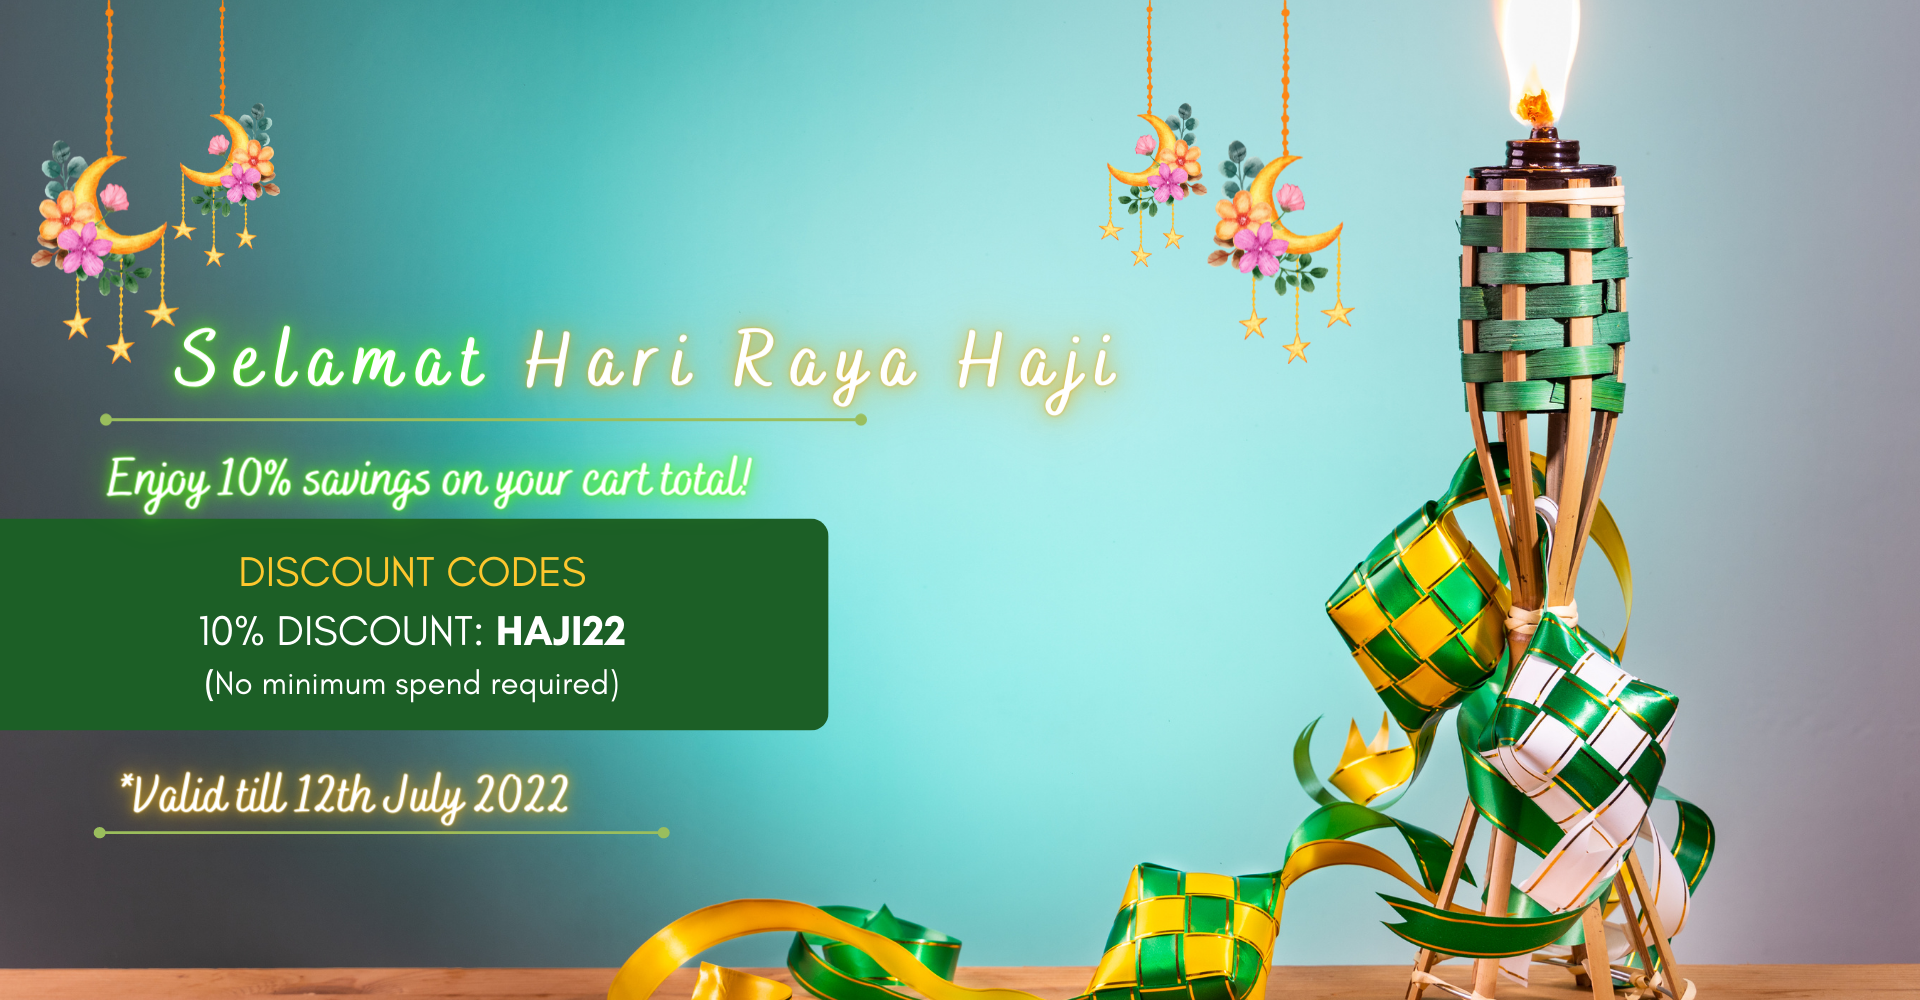 Hari Raya Haji 2022